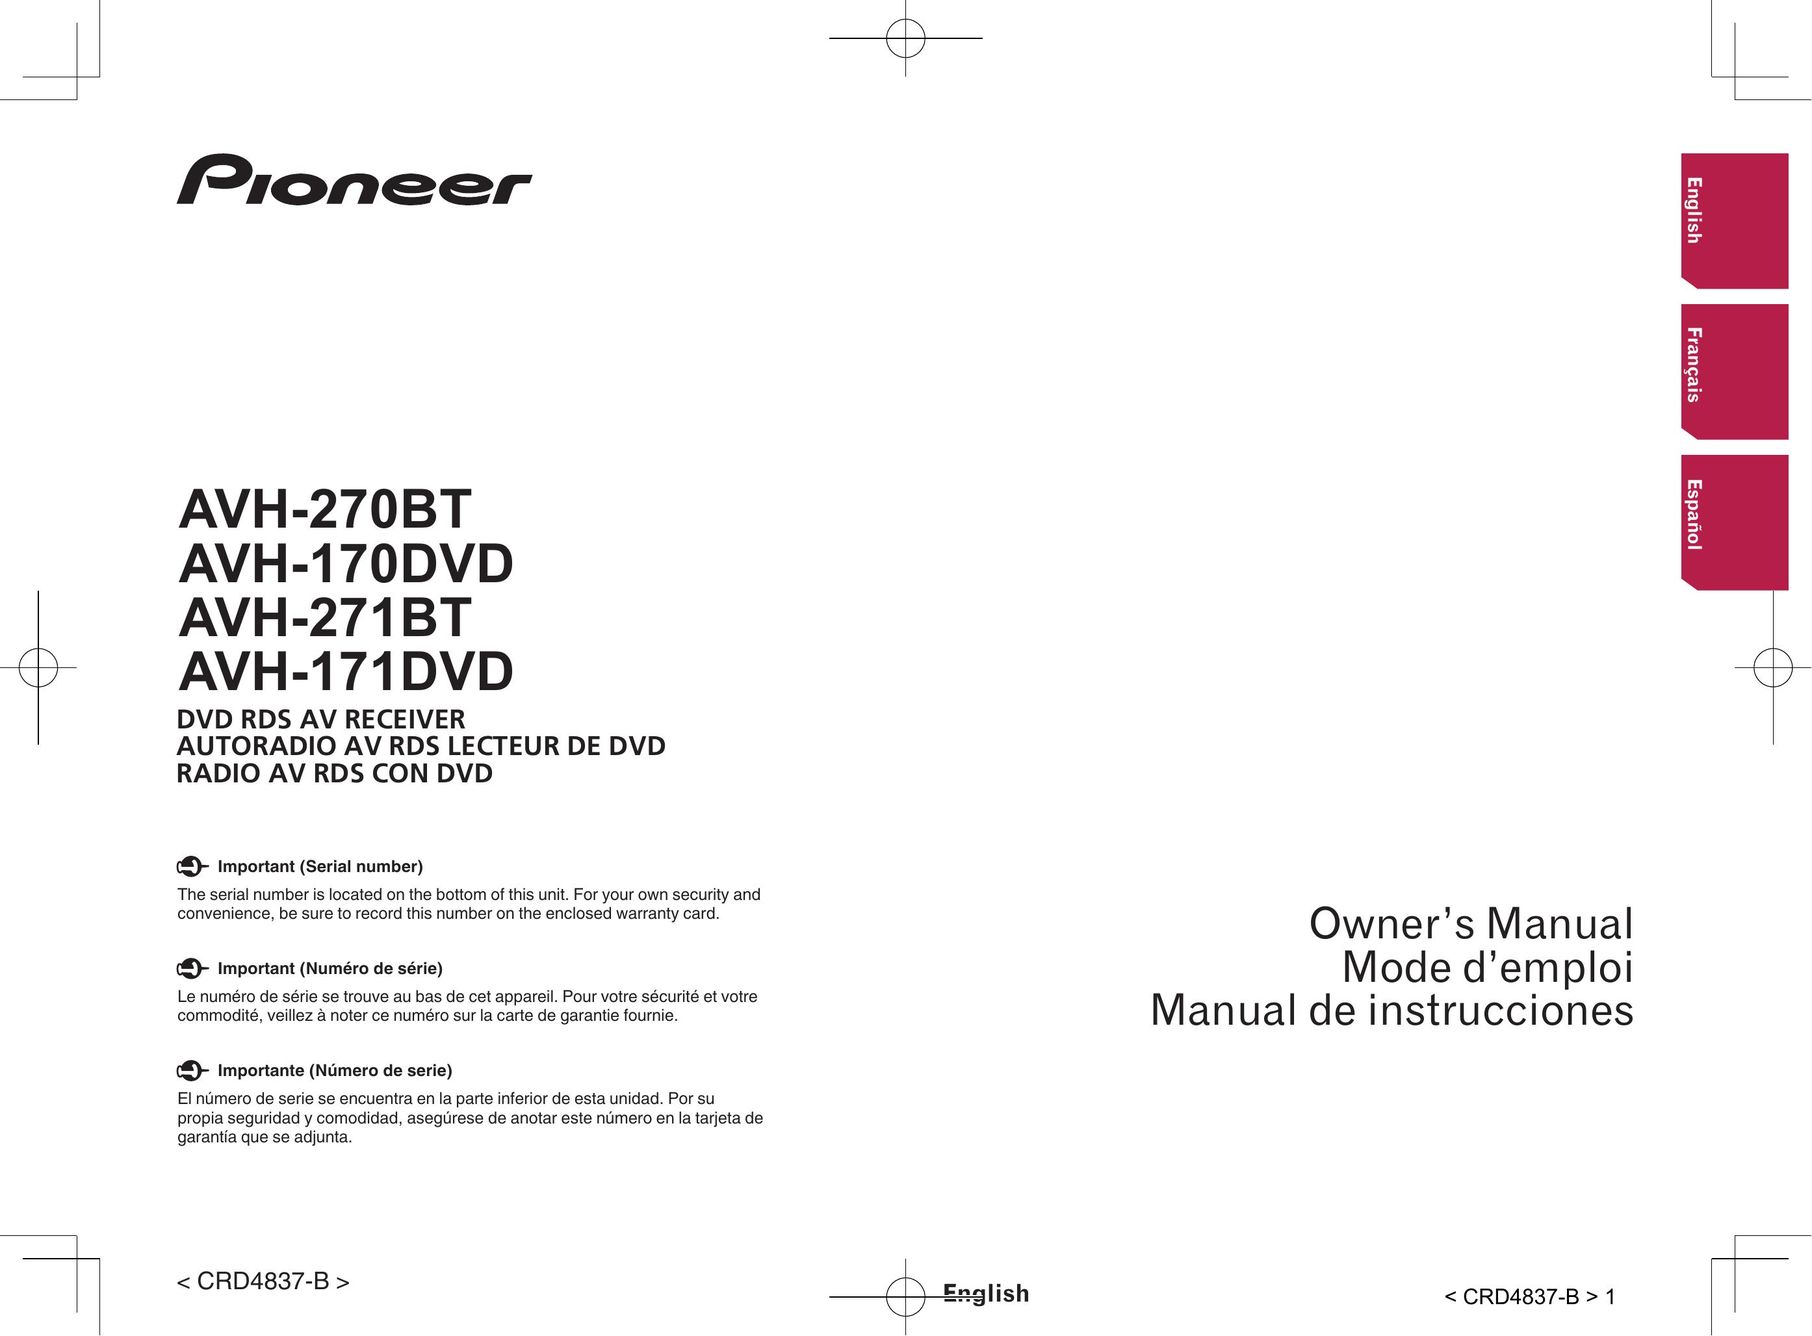 Pioneer AVH-171DVD TV Video Accessories User Manual